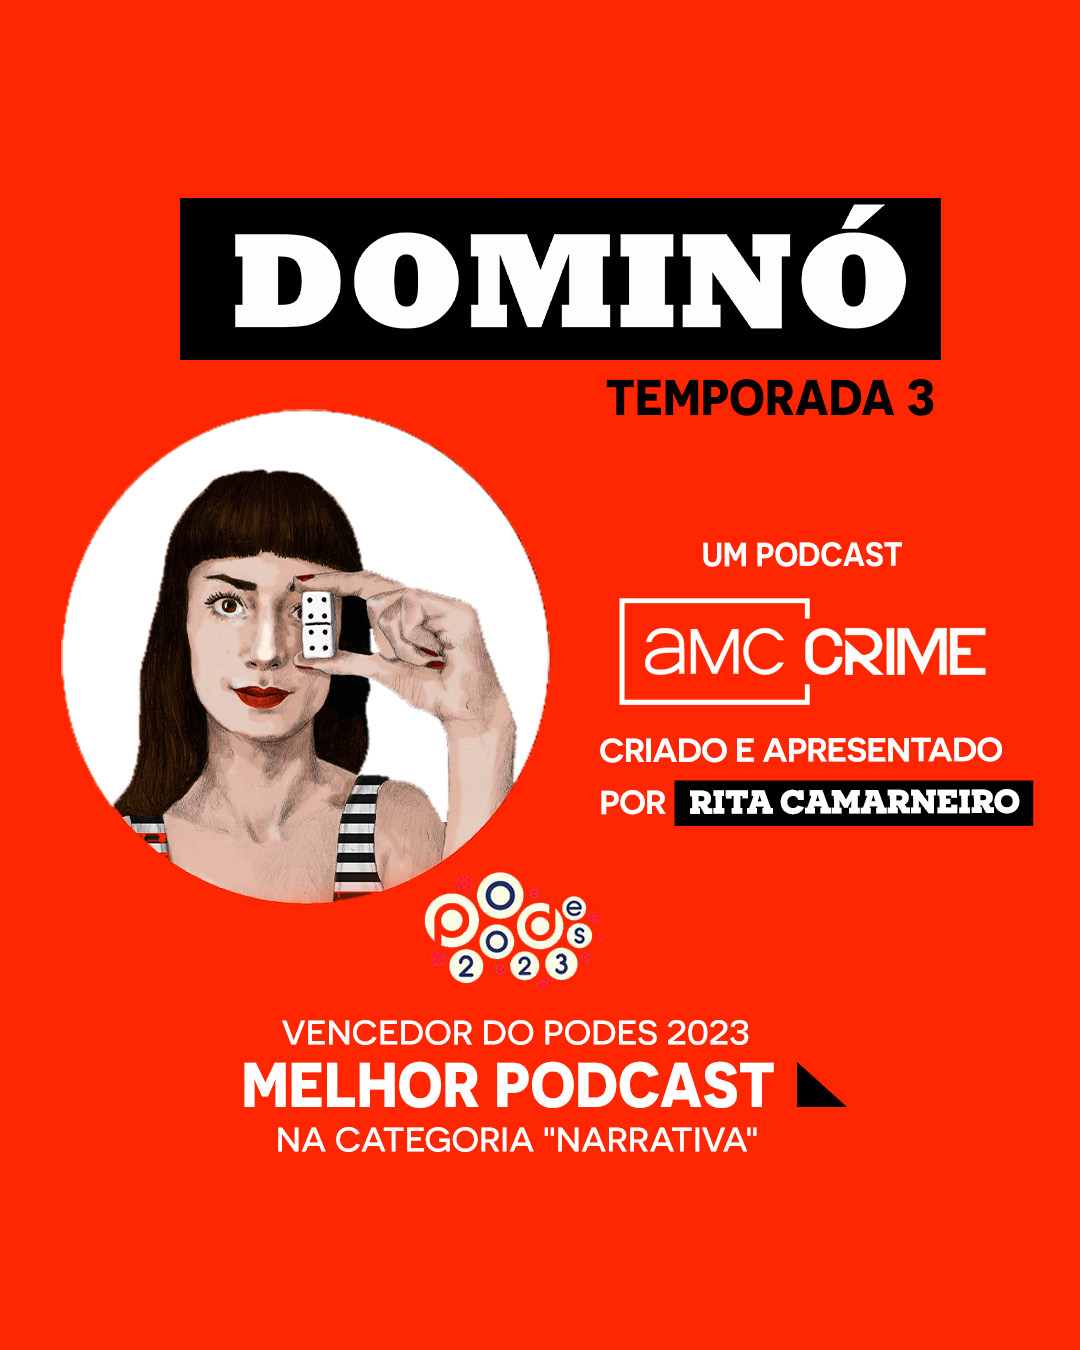 Podcast “Dominó” regressa para uma terceira temporada